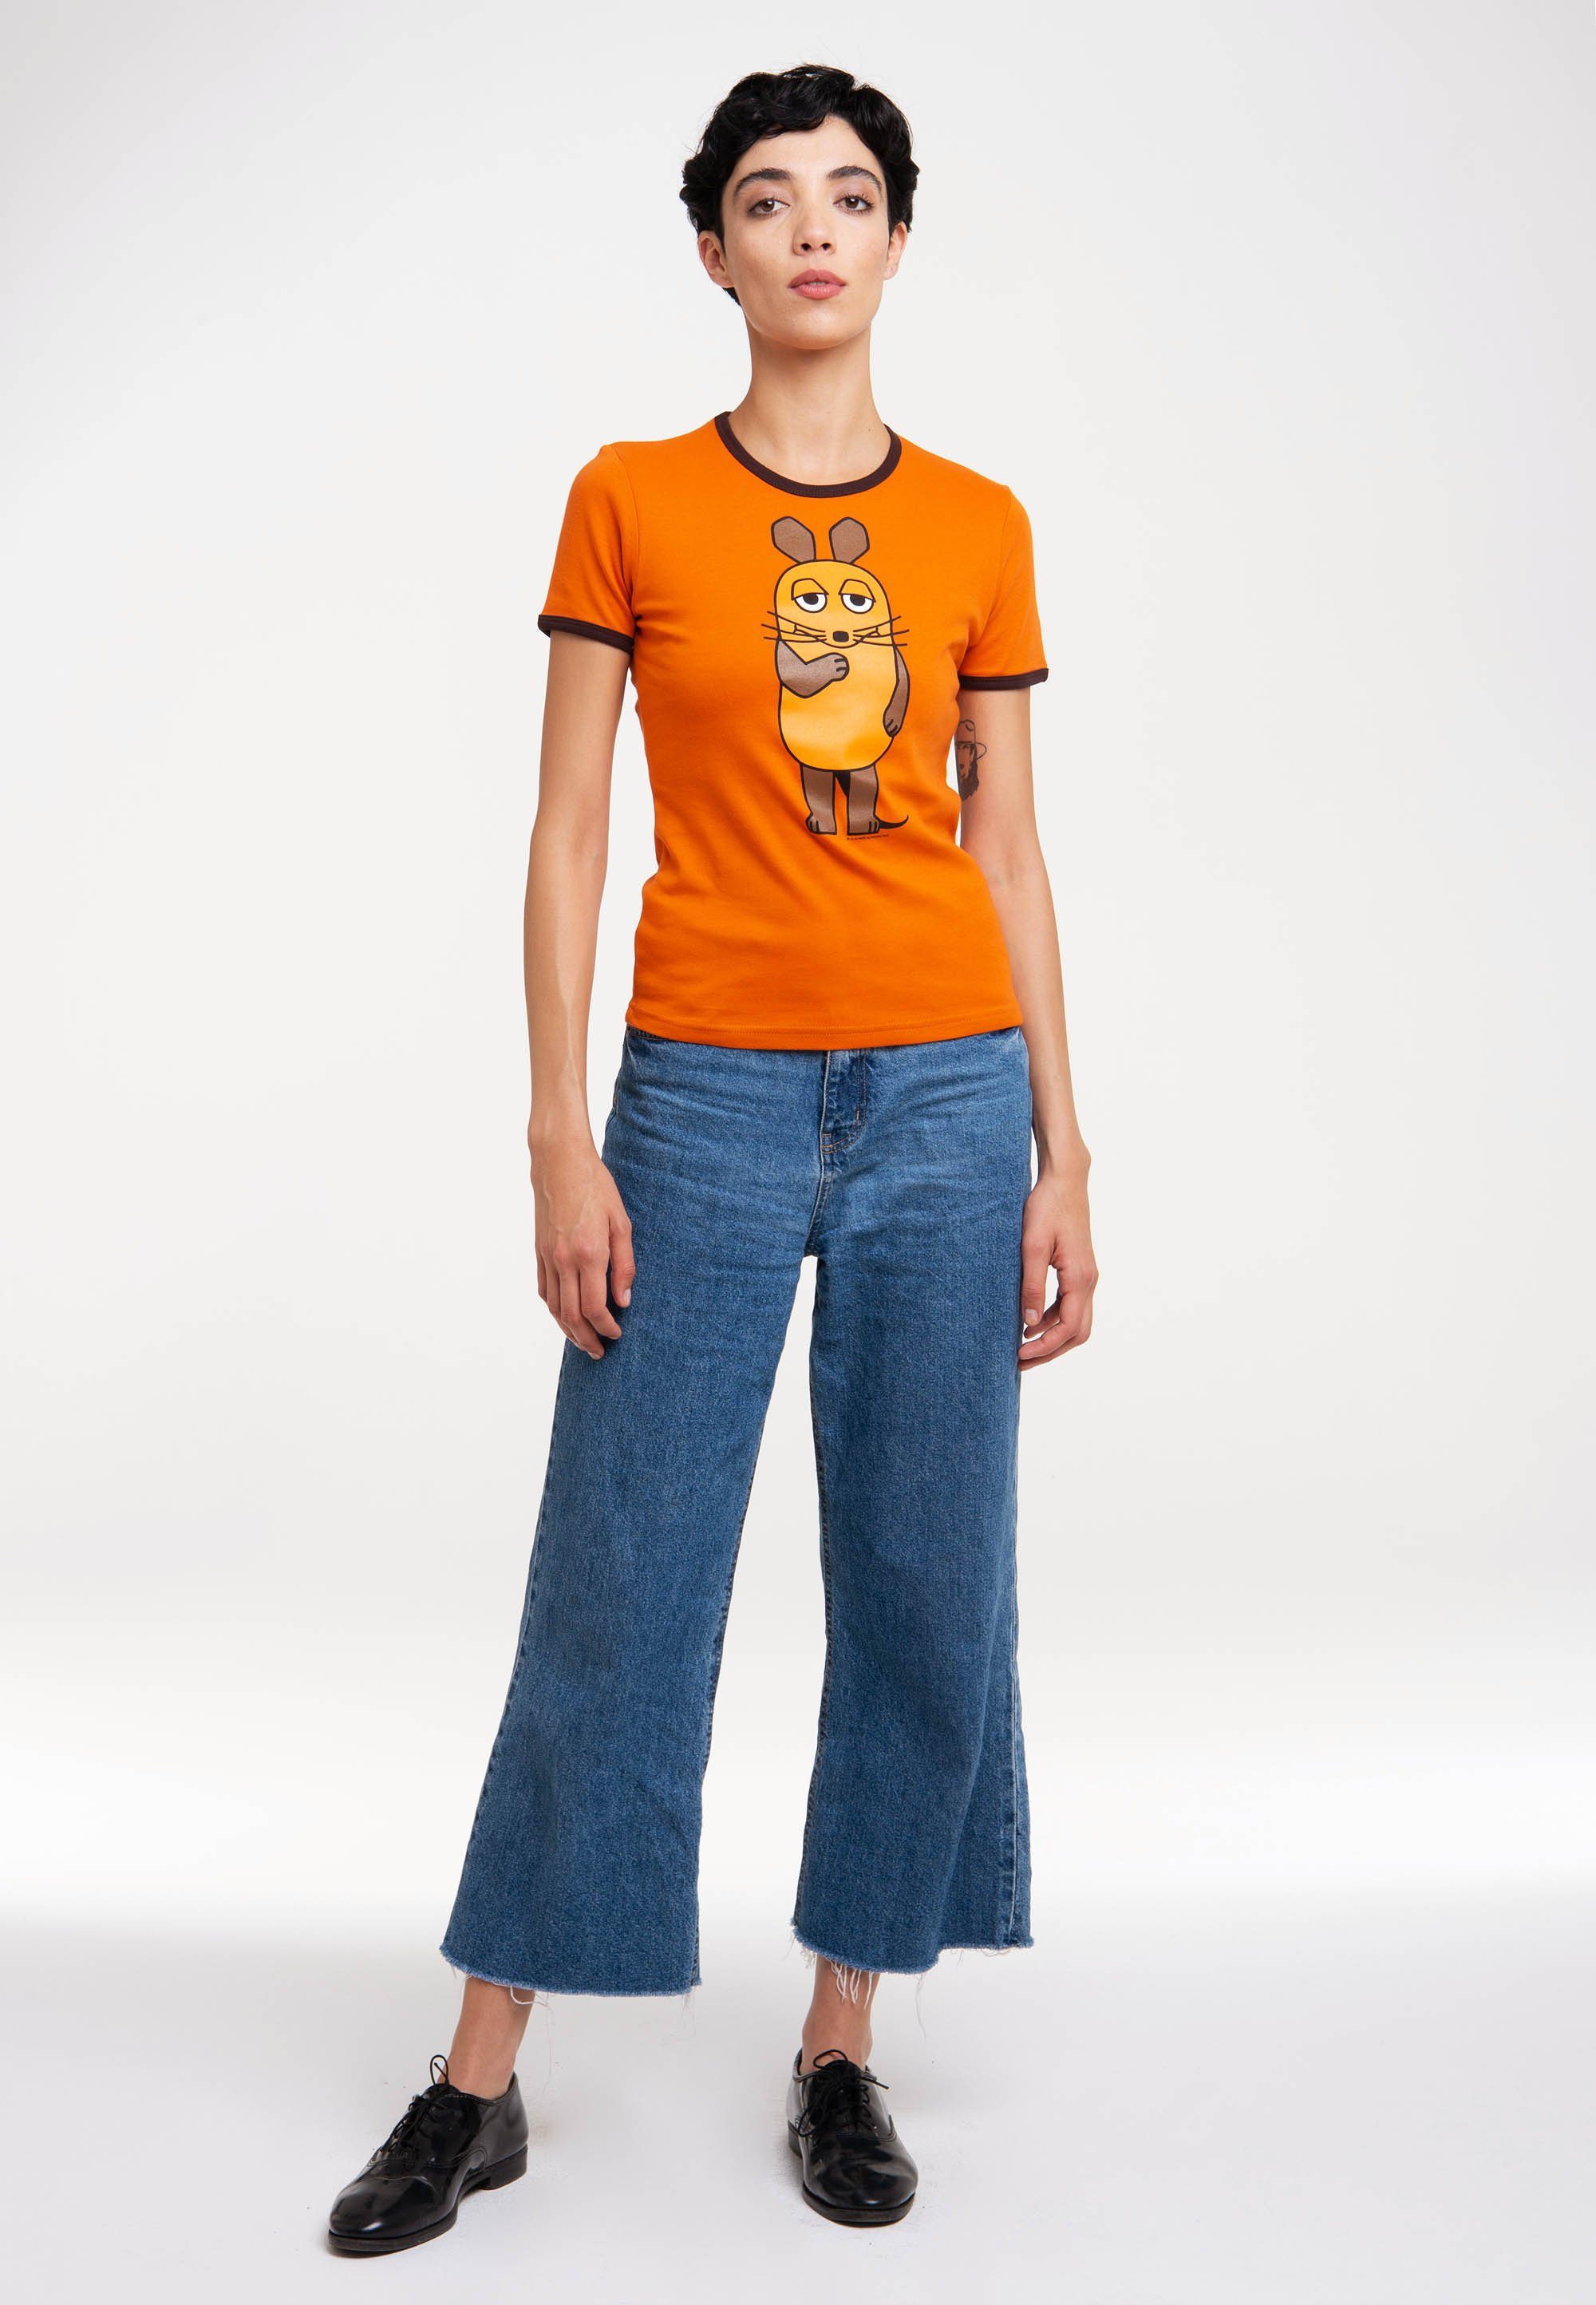 LOGOSHIRT T-Shirt Die Print Die orange-dunkelbraun Sendung mit der Maus Maus - mit lizenziertem